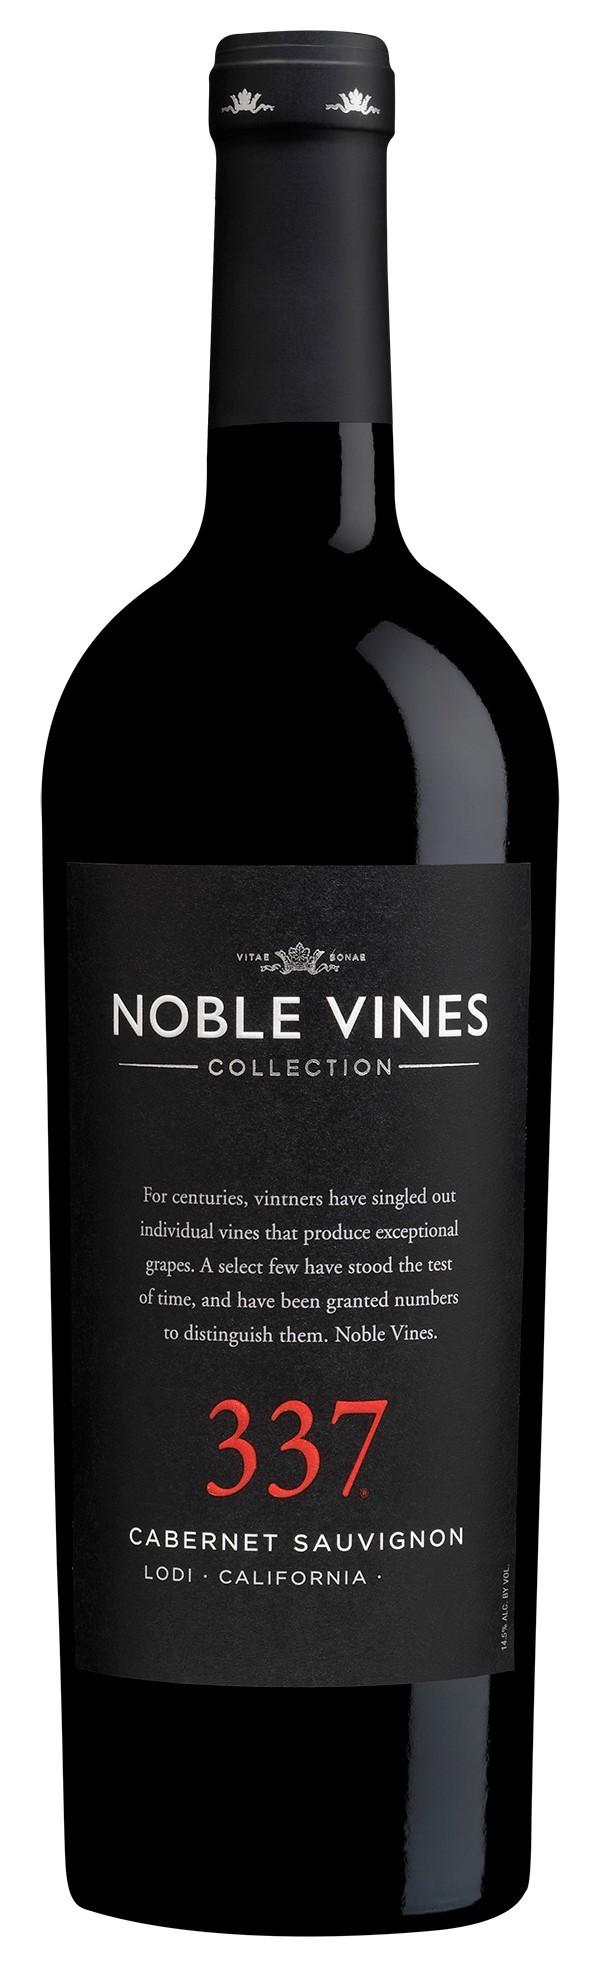 Noble Vines 337 Cabernet Sauvignon 2016 California, USA Doften är stor med en mycket fruktig karaktär av mörka körsbär, svarta vinbär, örter och rostat kaffe.